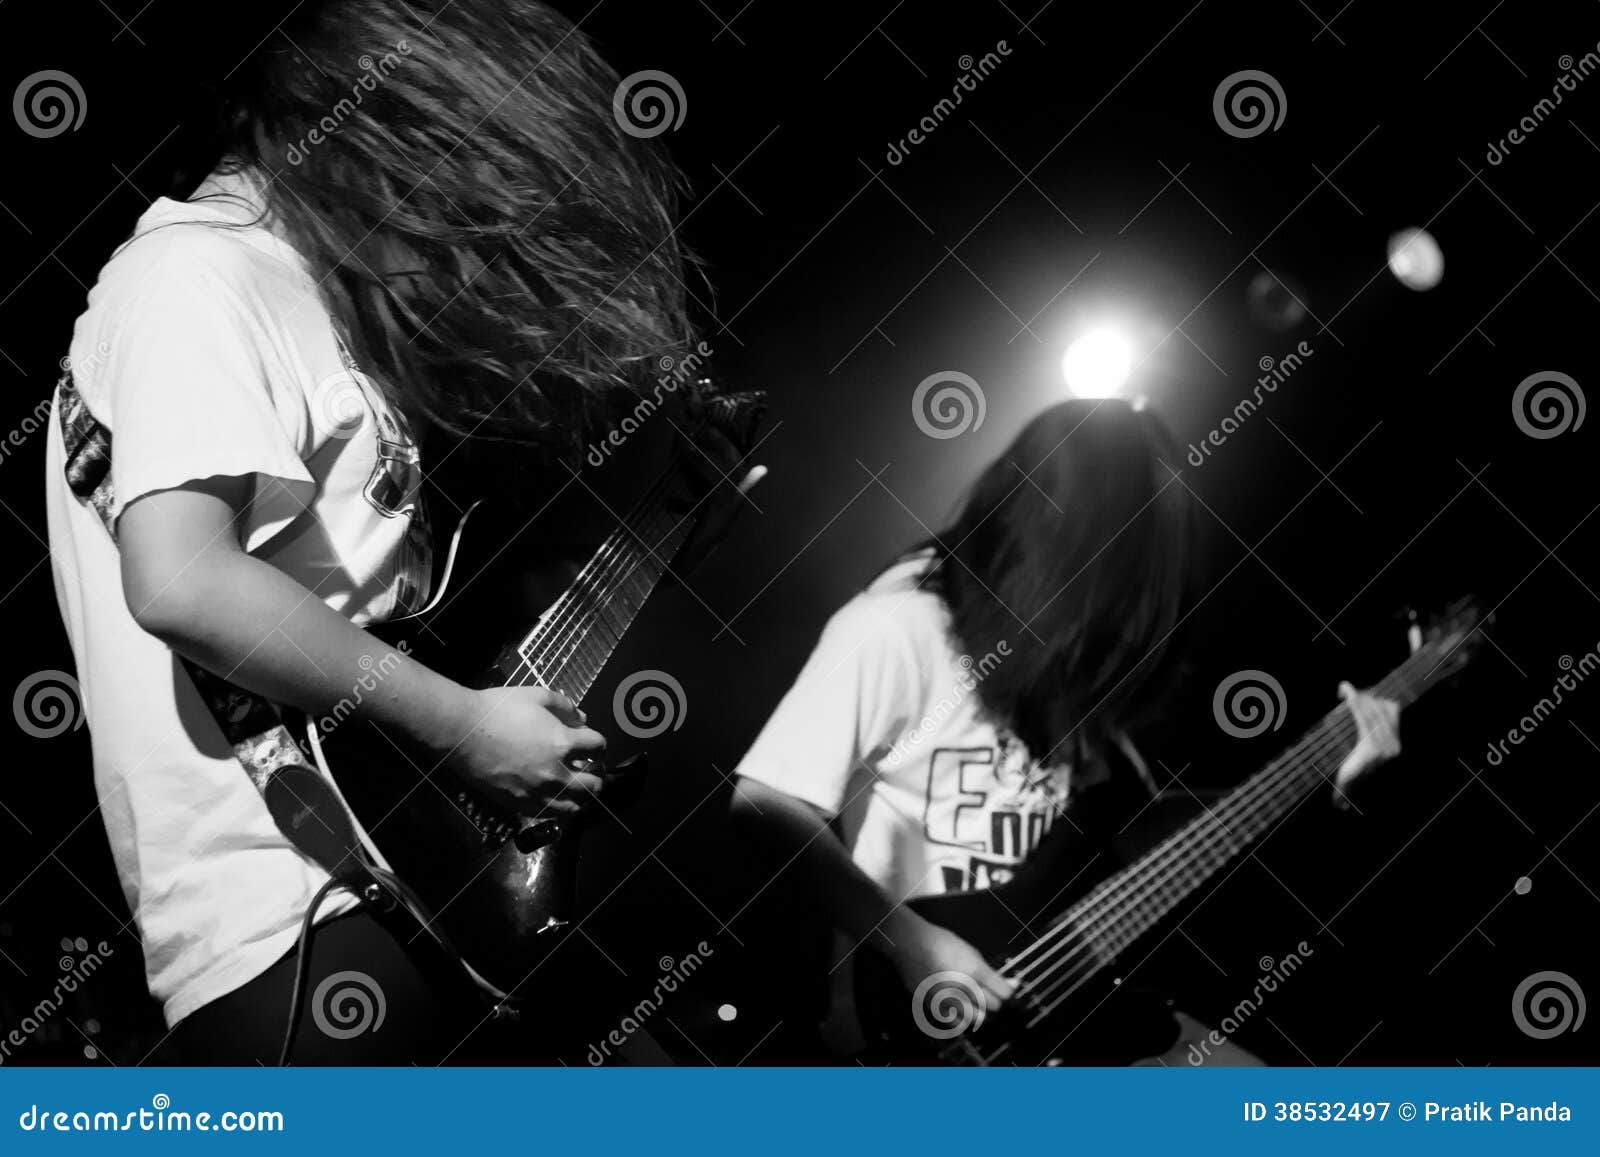 Metal Concert Hairstyles Long Hair | TikTok